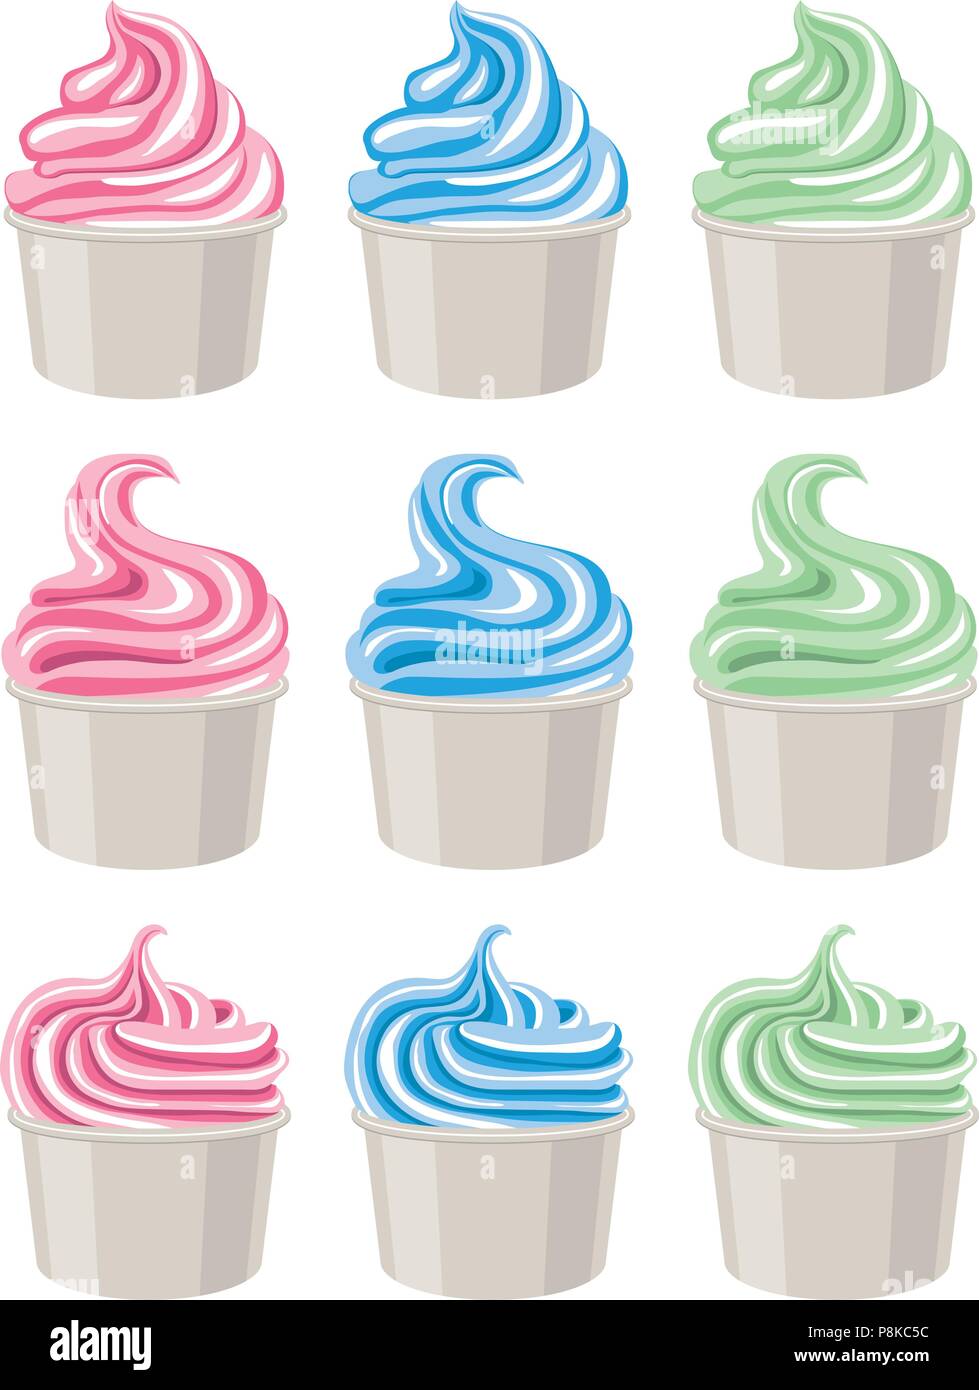 Vector icônes colorées de la crème glacée ou du yogourt dans cups isolé sur fond blanc. fouetté et symboles ou les yogourts congelés icecream Illustration de Vecteur